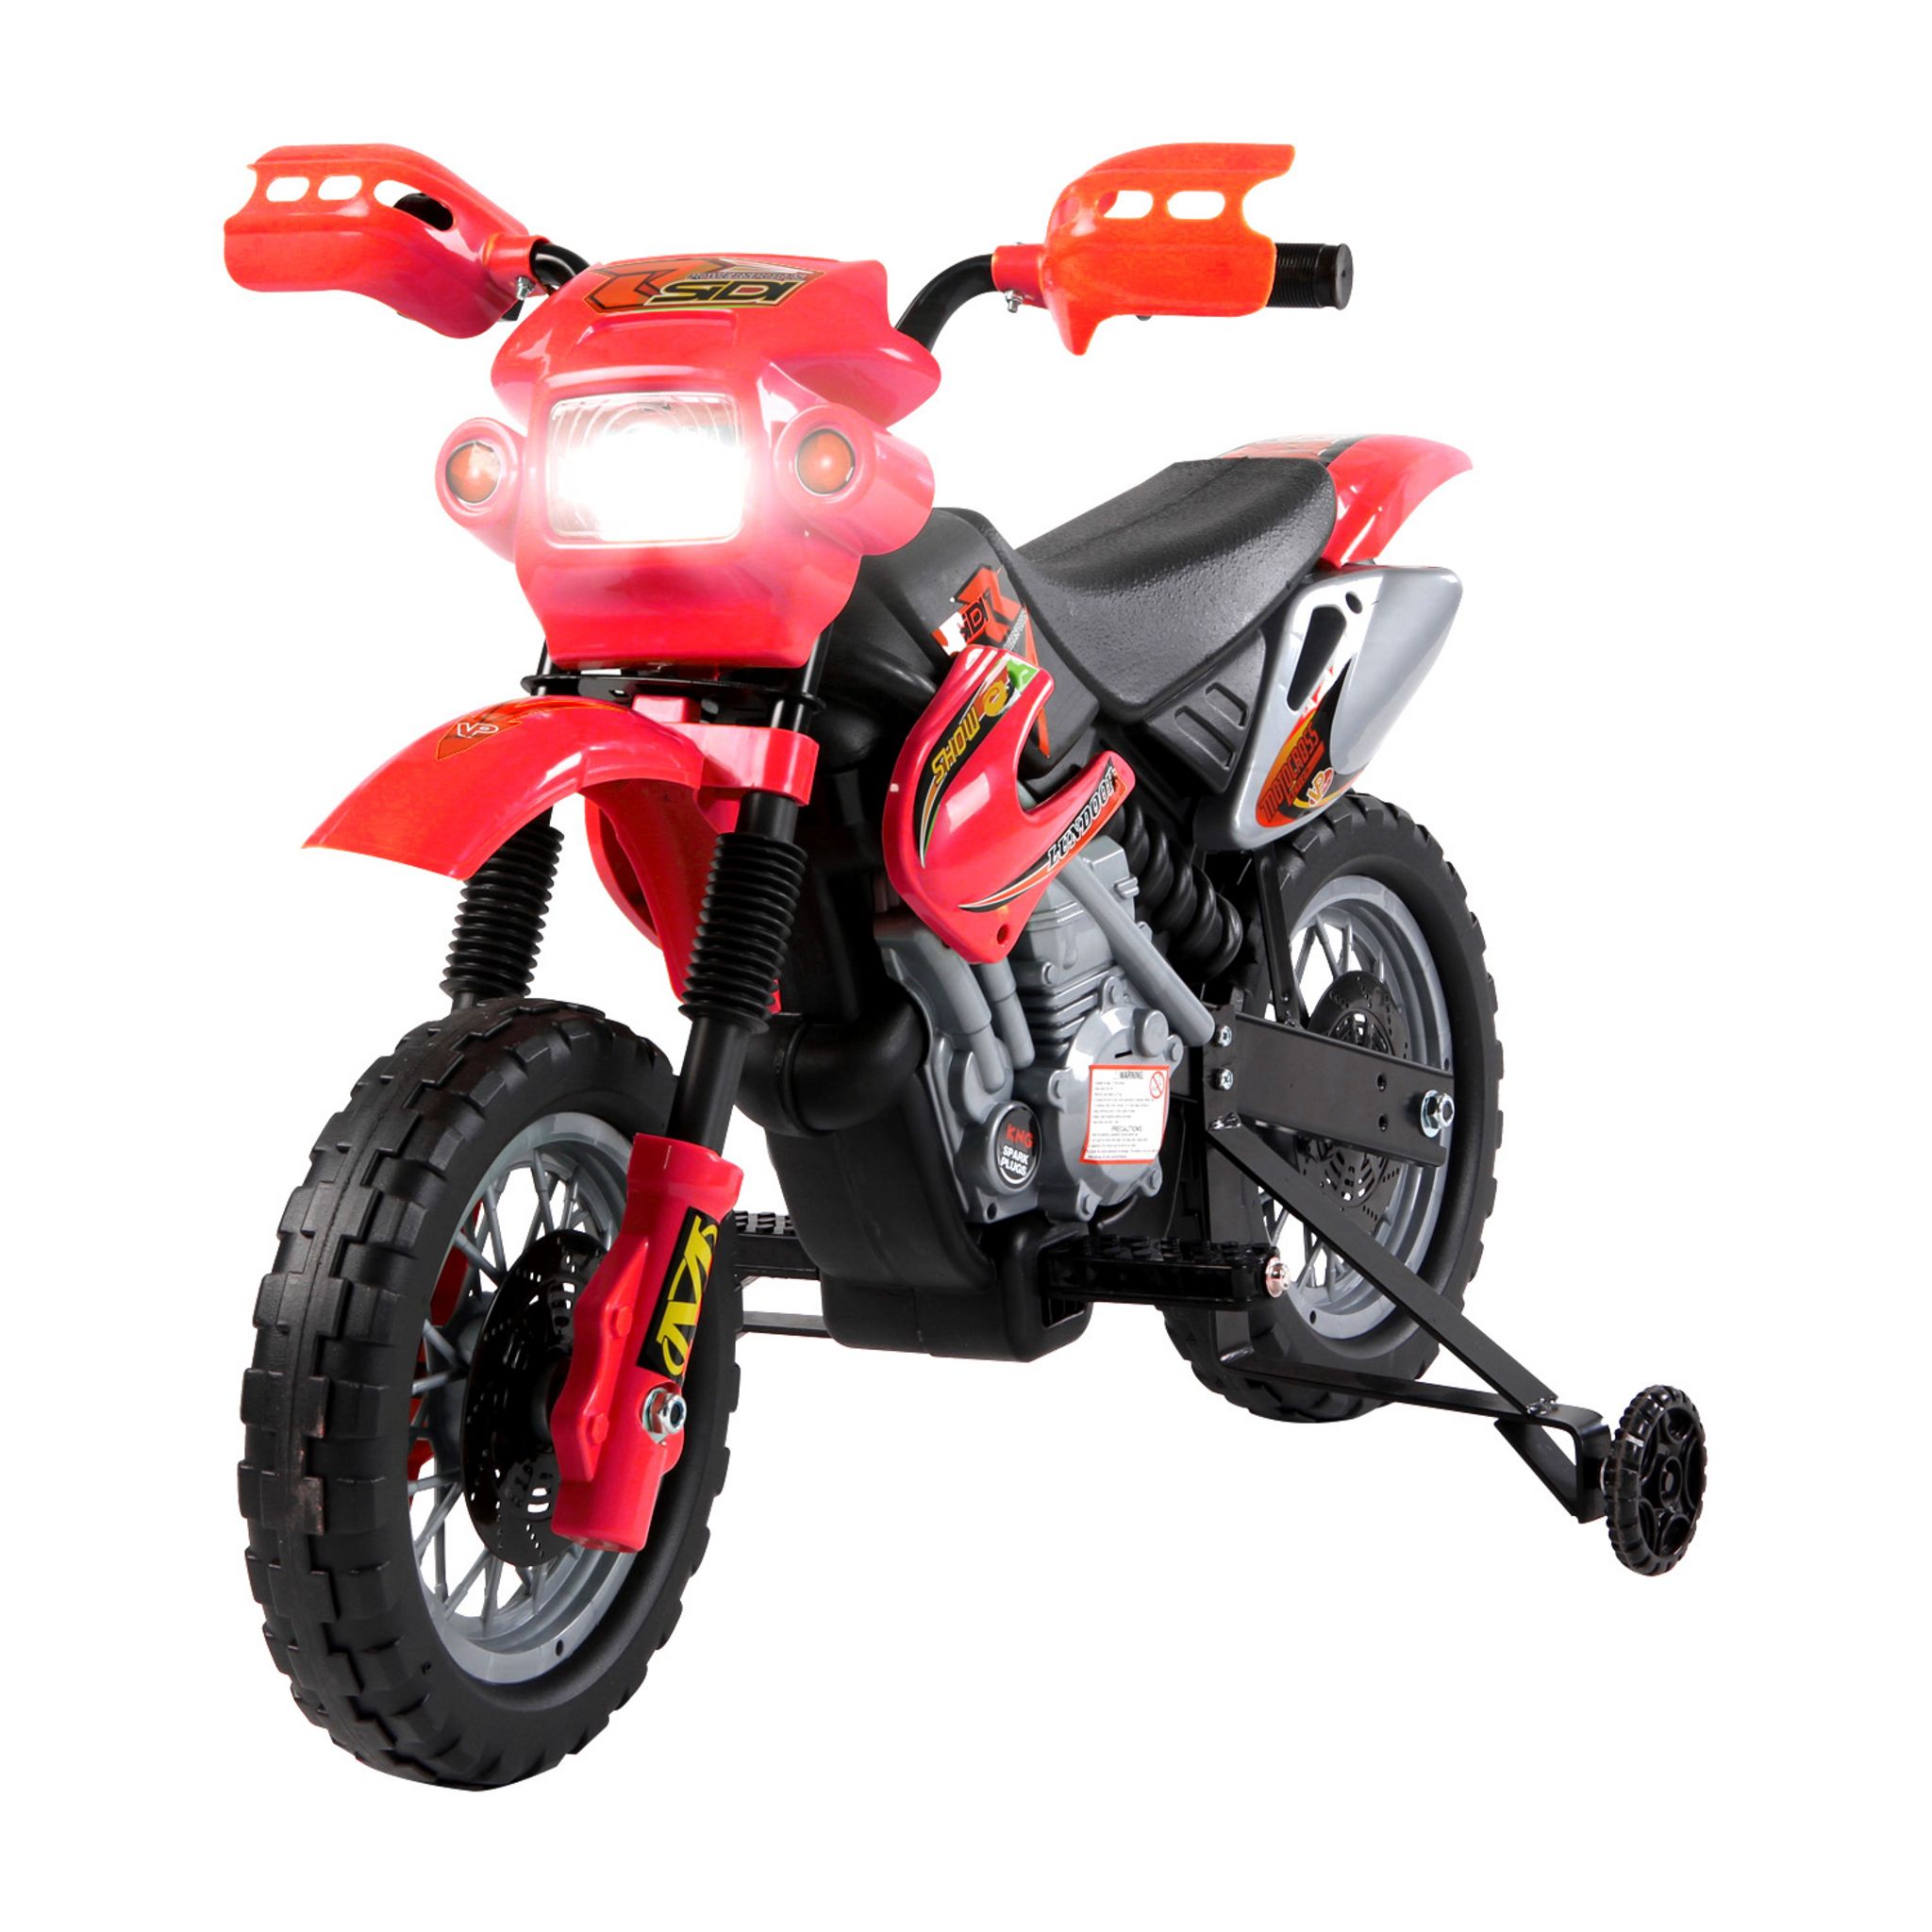 HOMCOM Moto cross électrique enfant 3 à 6 ans 6 V phares klaxon musiques  102 x 53 x 66 cm rouge et noir pas cher 